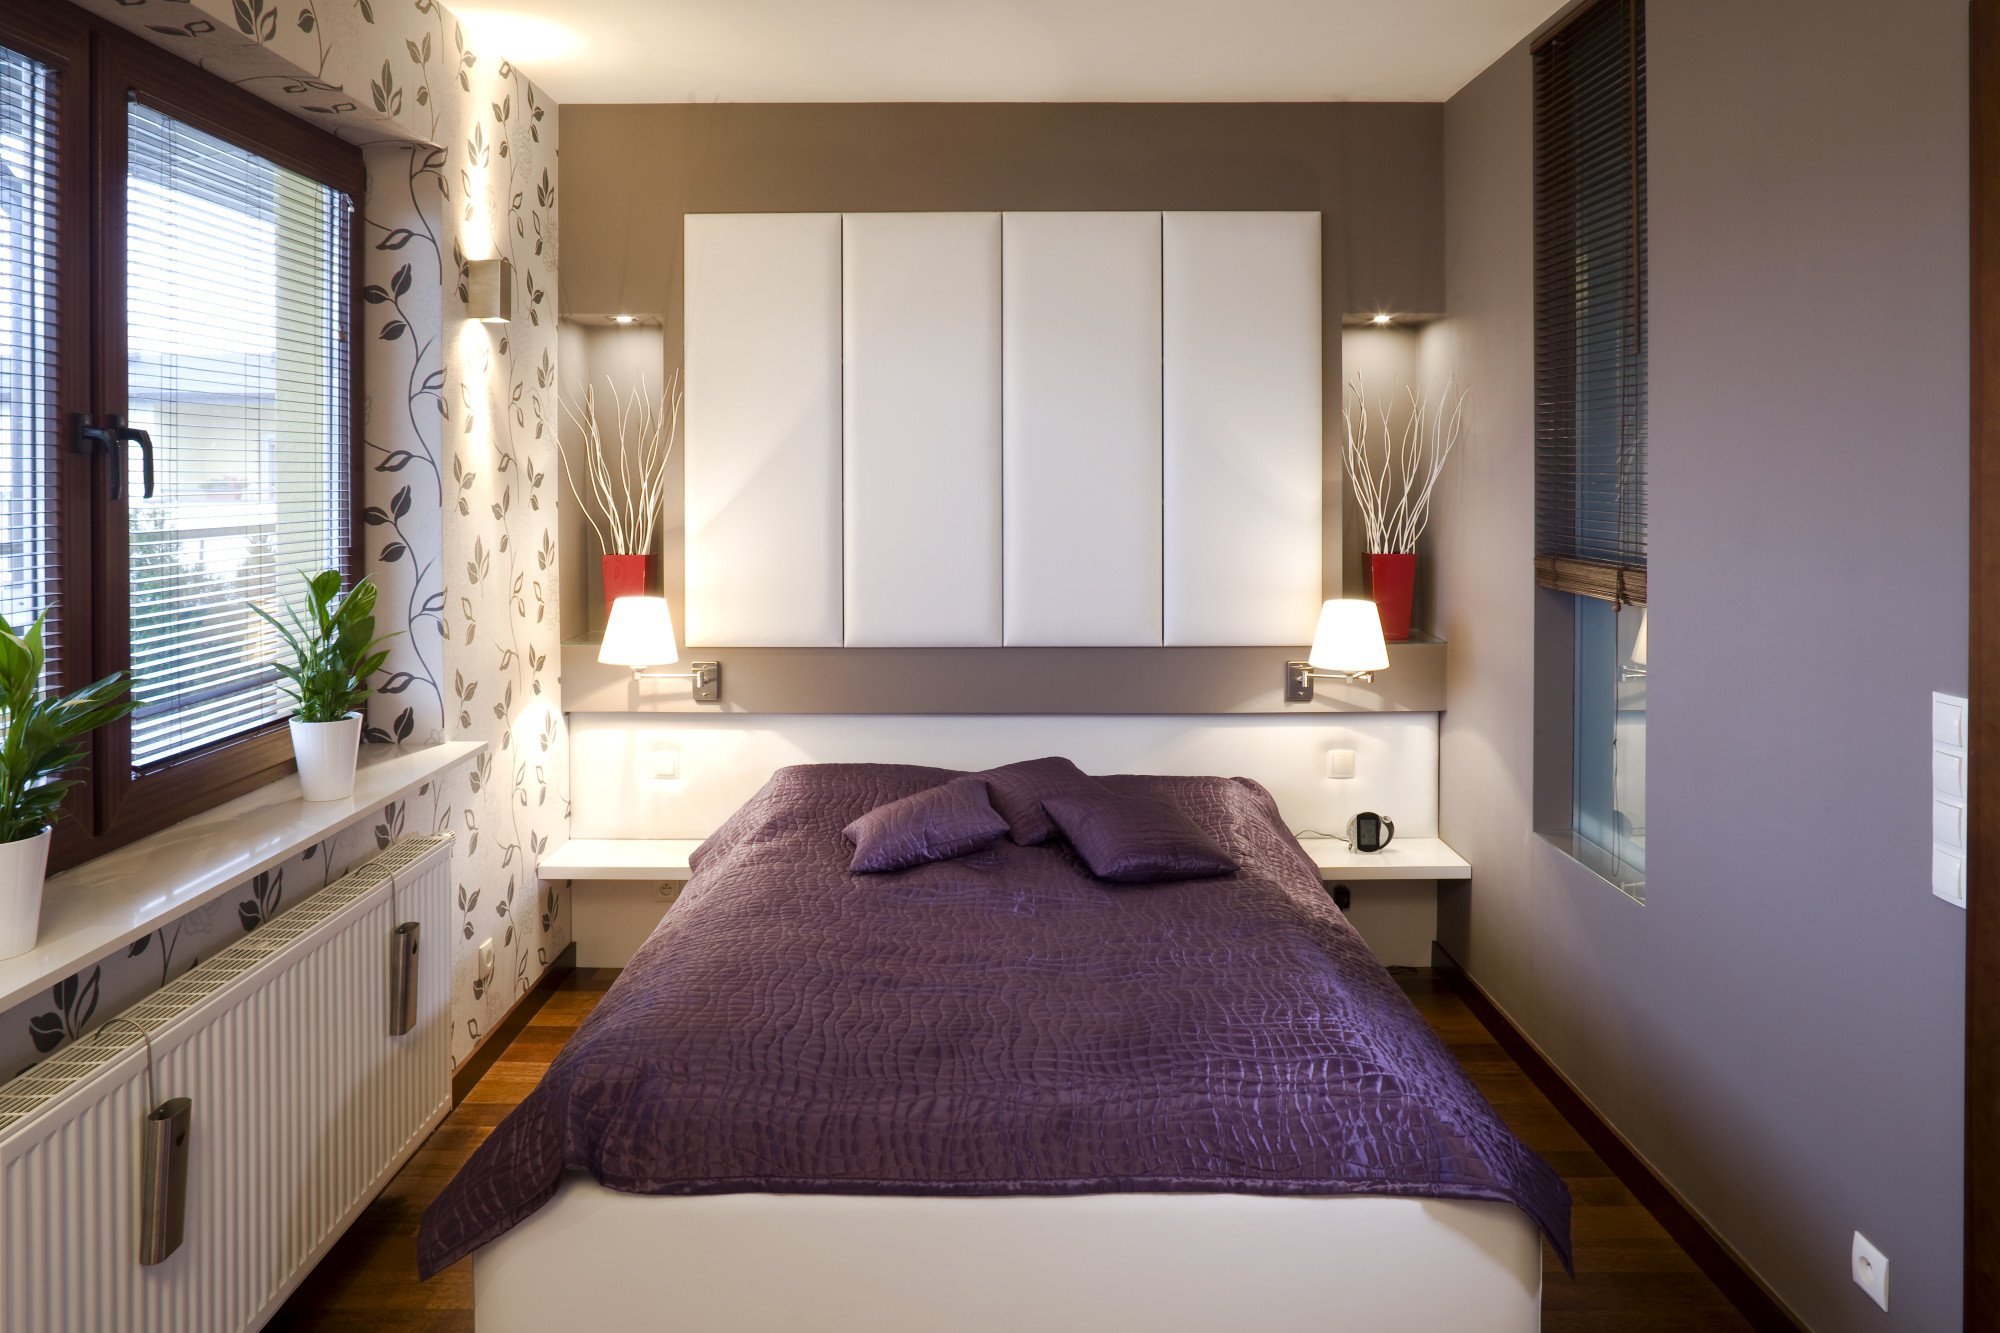 Идеи для маленькой спальни: стильный интерьер в ограниченном пространстве